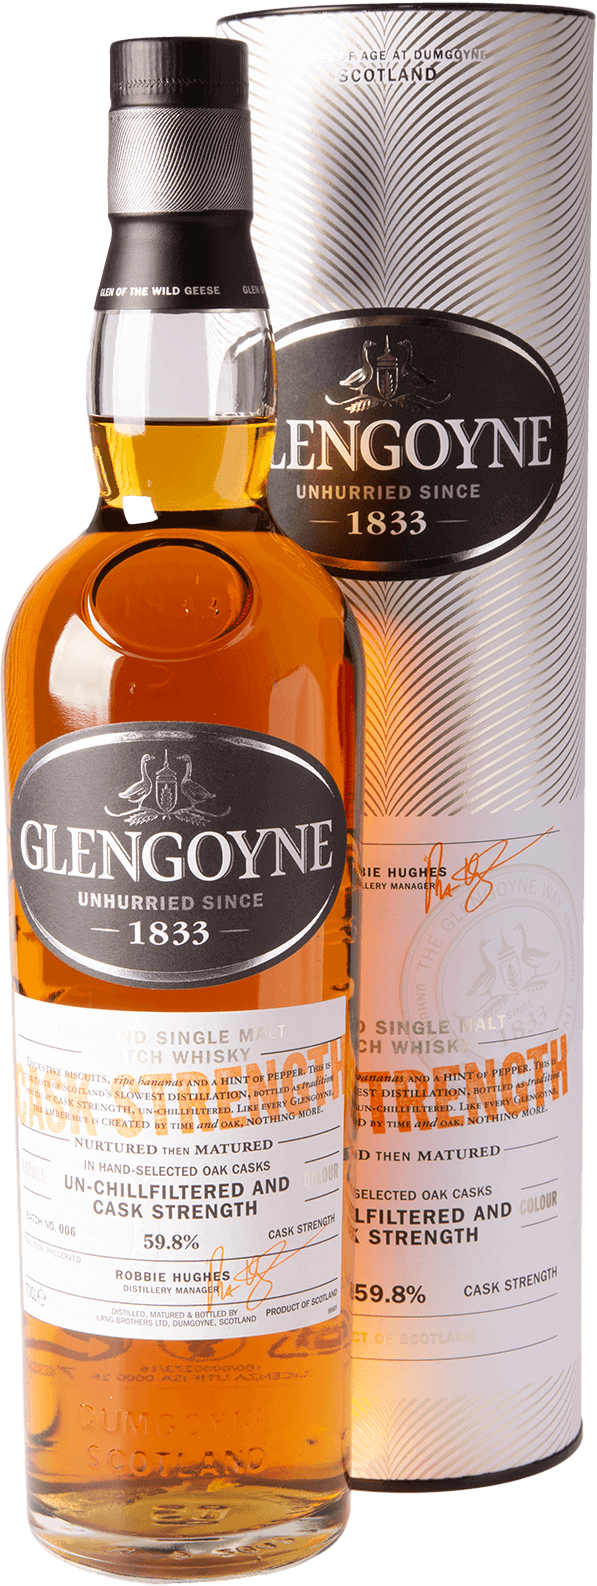 Glengoyne Cask Strength Whisky Batch No 006 59,8% 0,7L Shop